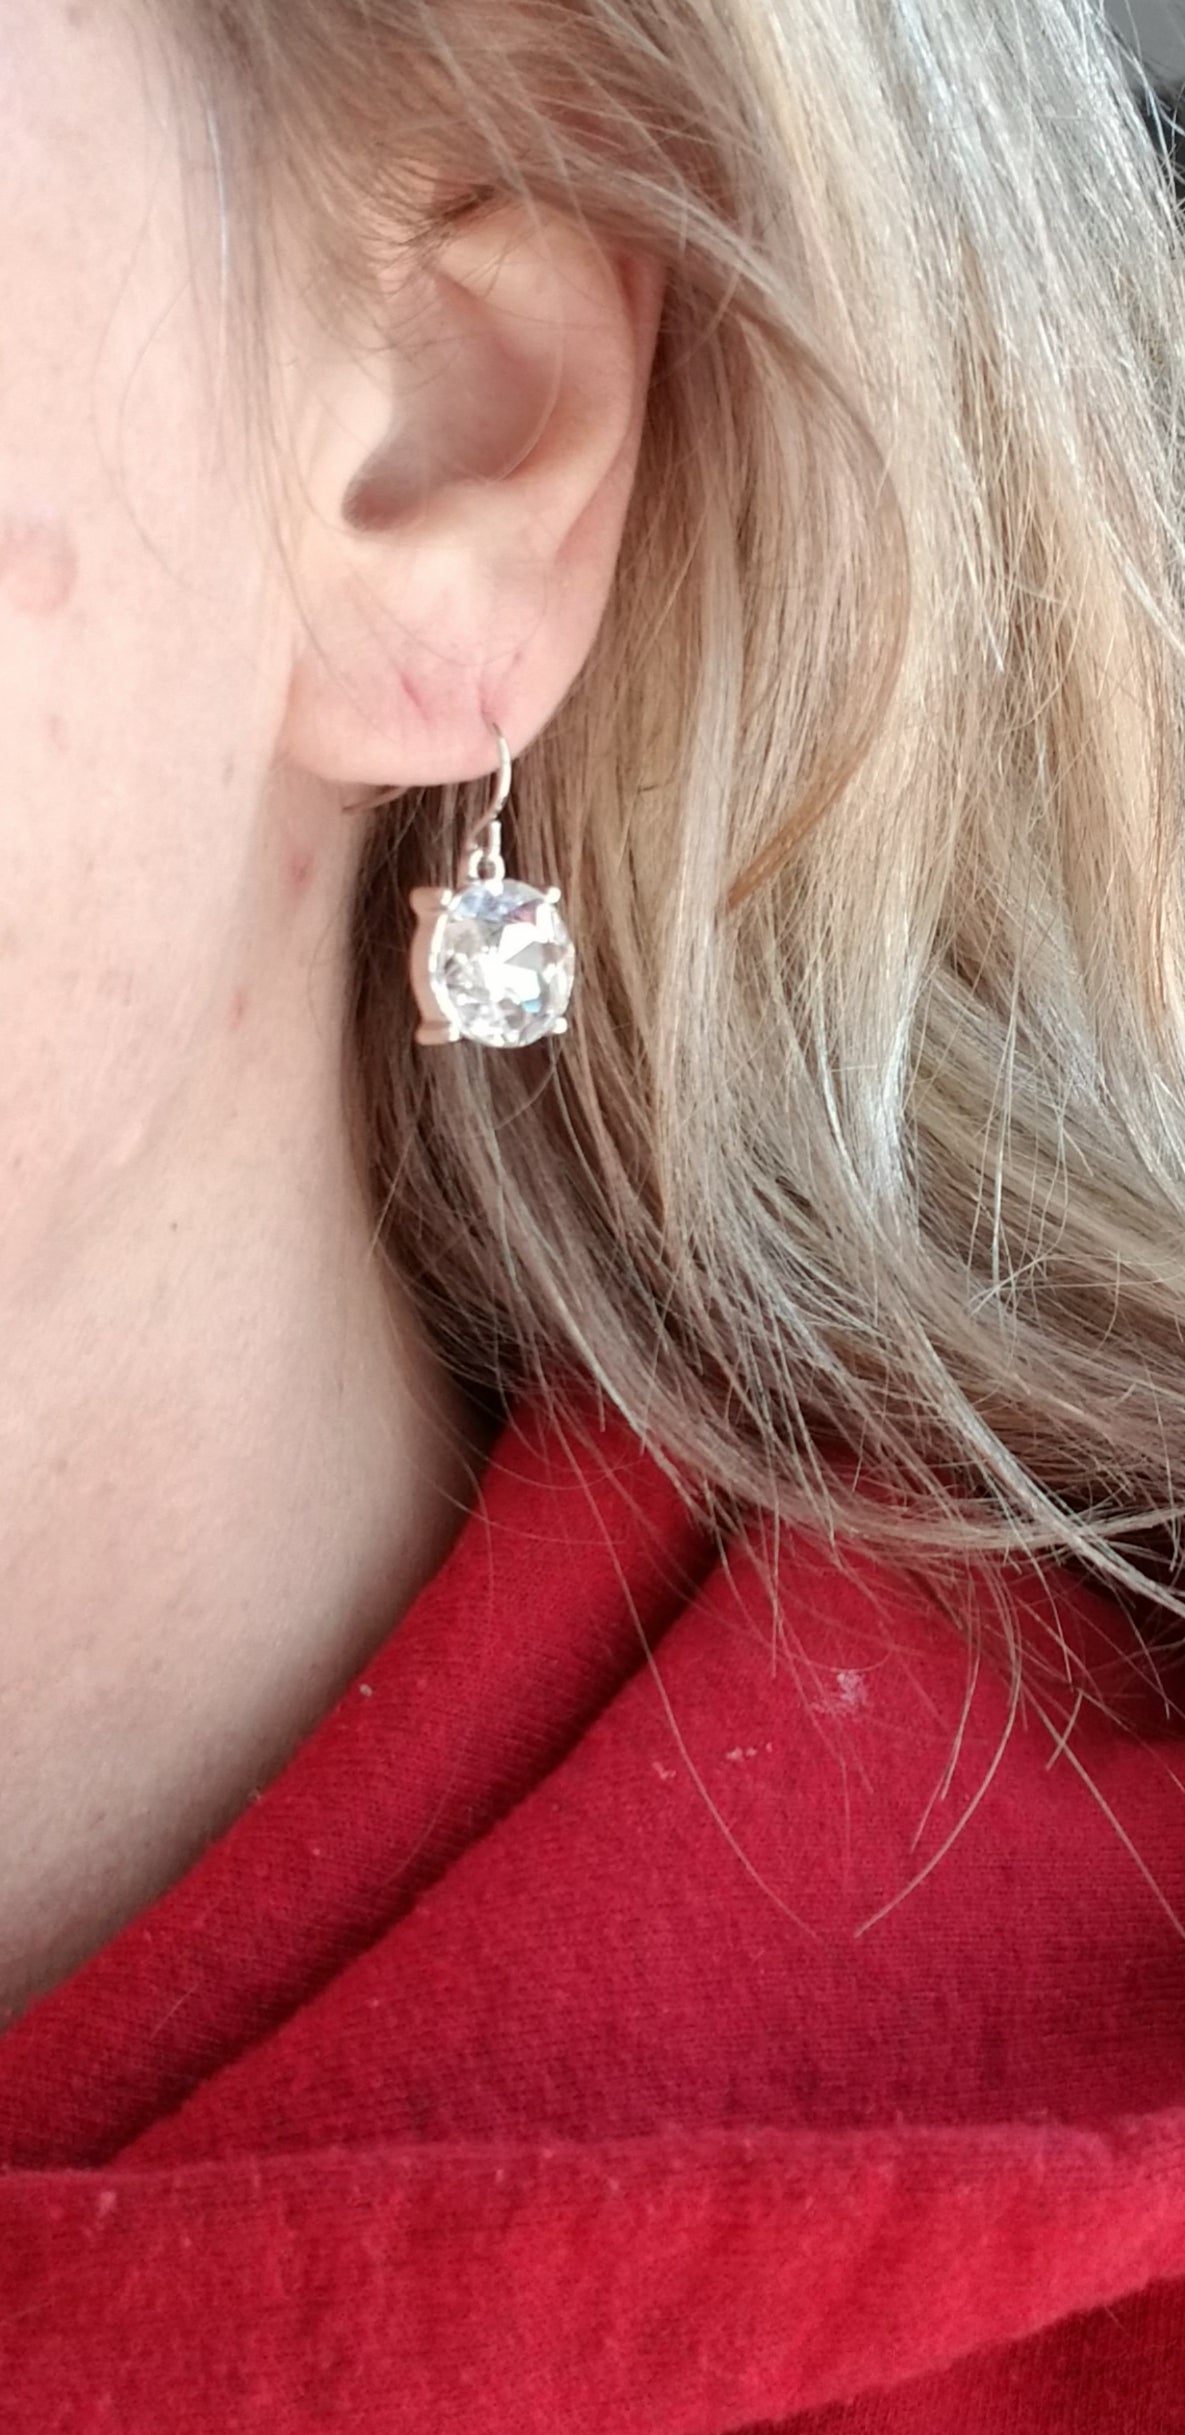 Diamond Rio Rhinestone earrings - #wholesaleacc, diamond rio, earnings, earrinf, earring, earringa, earringear, earrings, earromgs, earrringz, fish hook, rhinestone, rhinestone earrings, rhinestones, sparkly, stone -  - Baha Ranch Western Wear